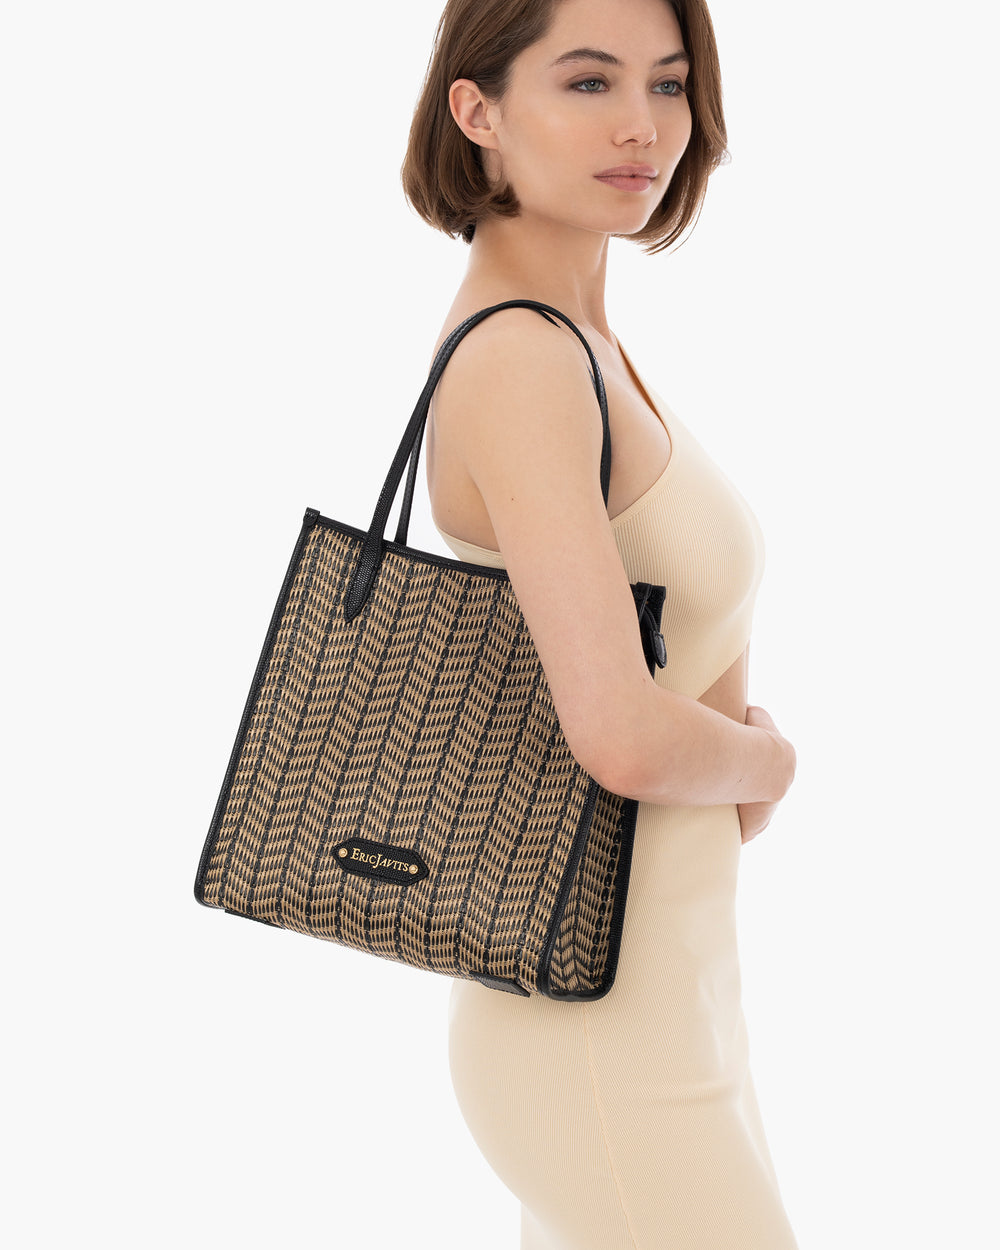 Biza Shoulder Tote | Mid-Size Bag | Minimalist Style | Eric Javits ...